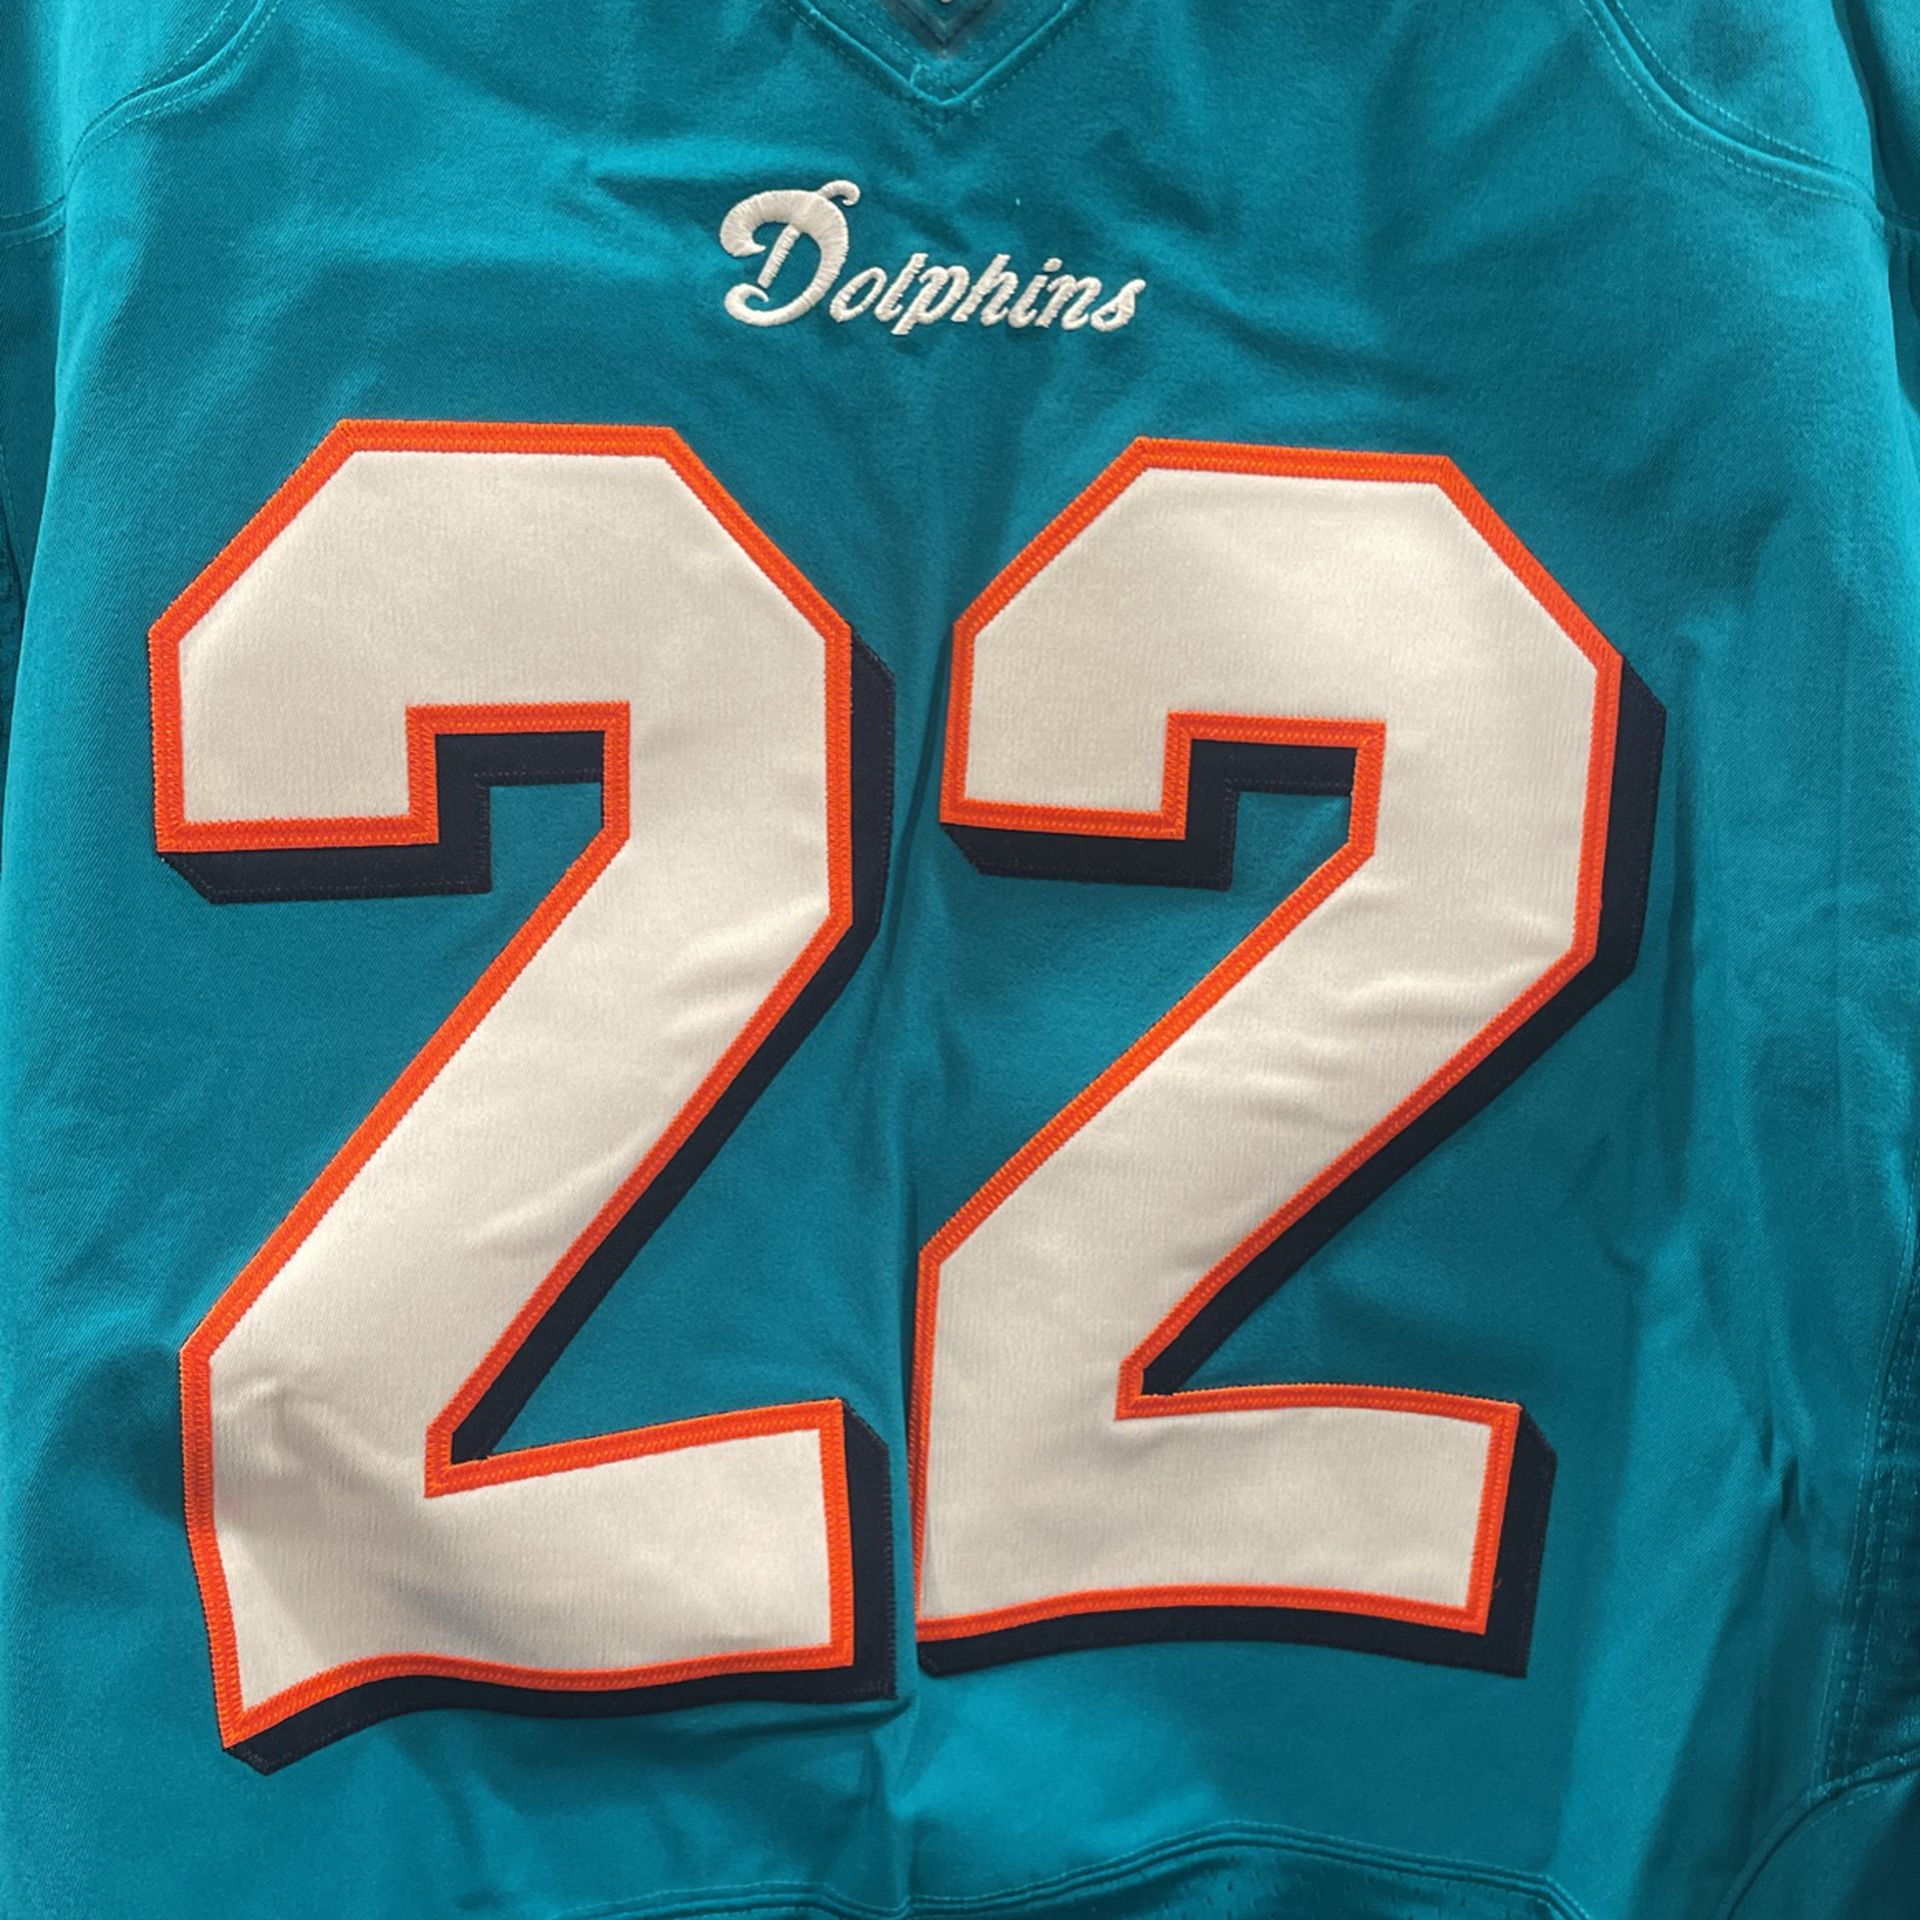 NFL Miami Dolphins Reggie Bush jersey 